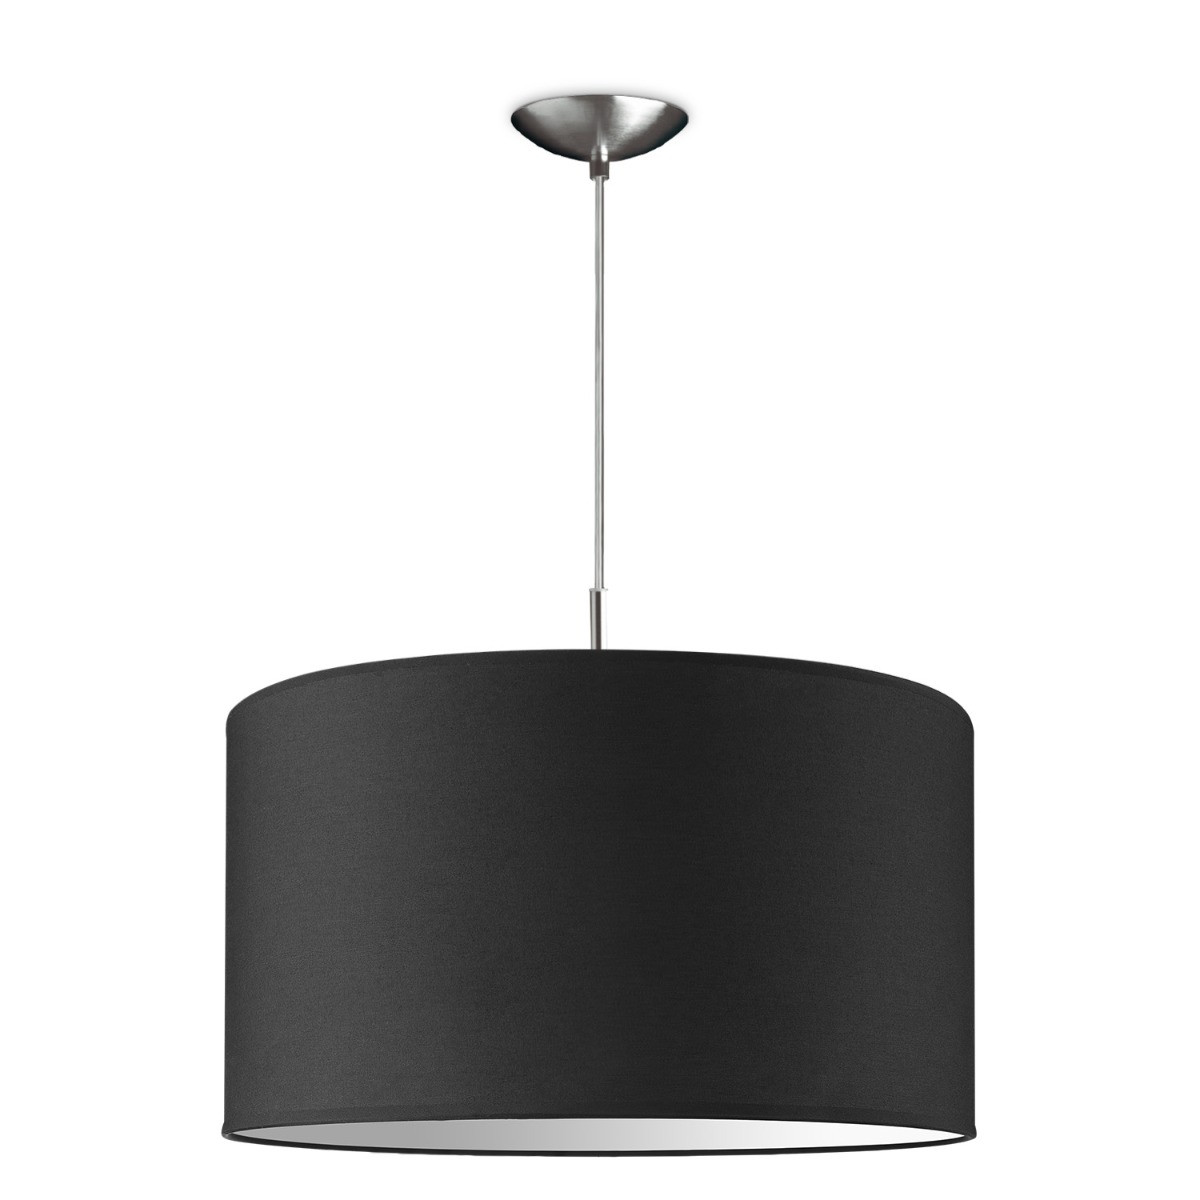 Light depot - hanglamp tube deluxe bling Ø 45 cm - zwart - Outlet